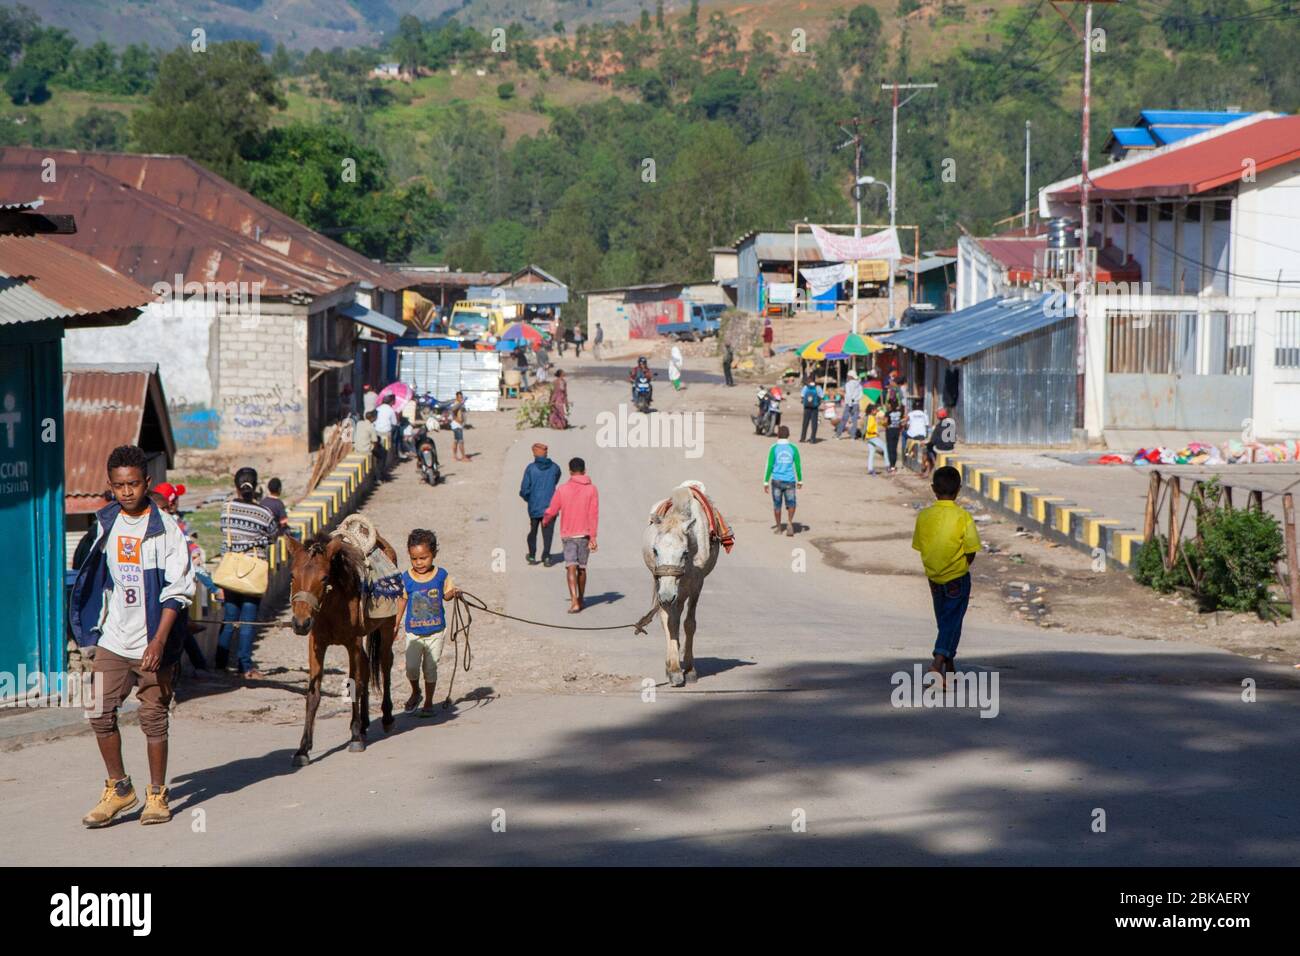 Maubisse ist eine historische Stadt in den Hügeln 70 km südlich von Dili im Bezirk Ainaro, Osttimor (Timor-Leste) Stockfoto